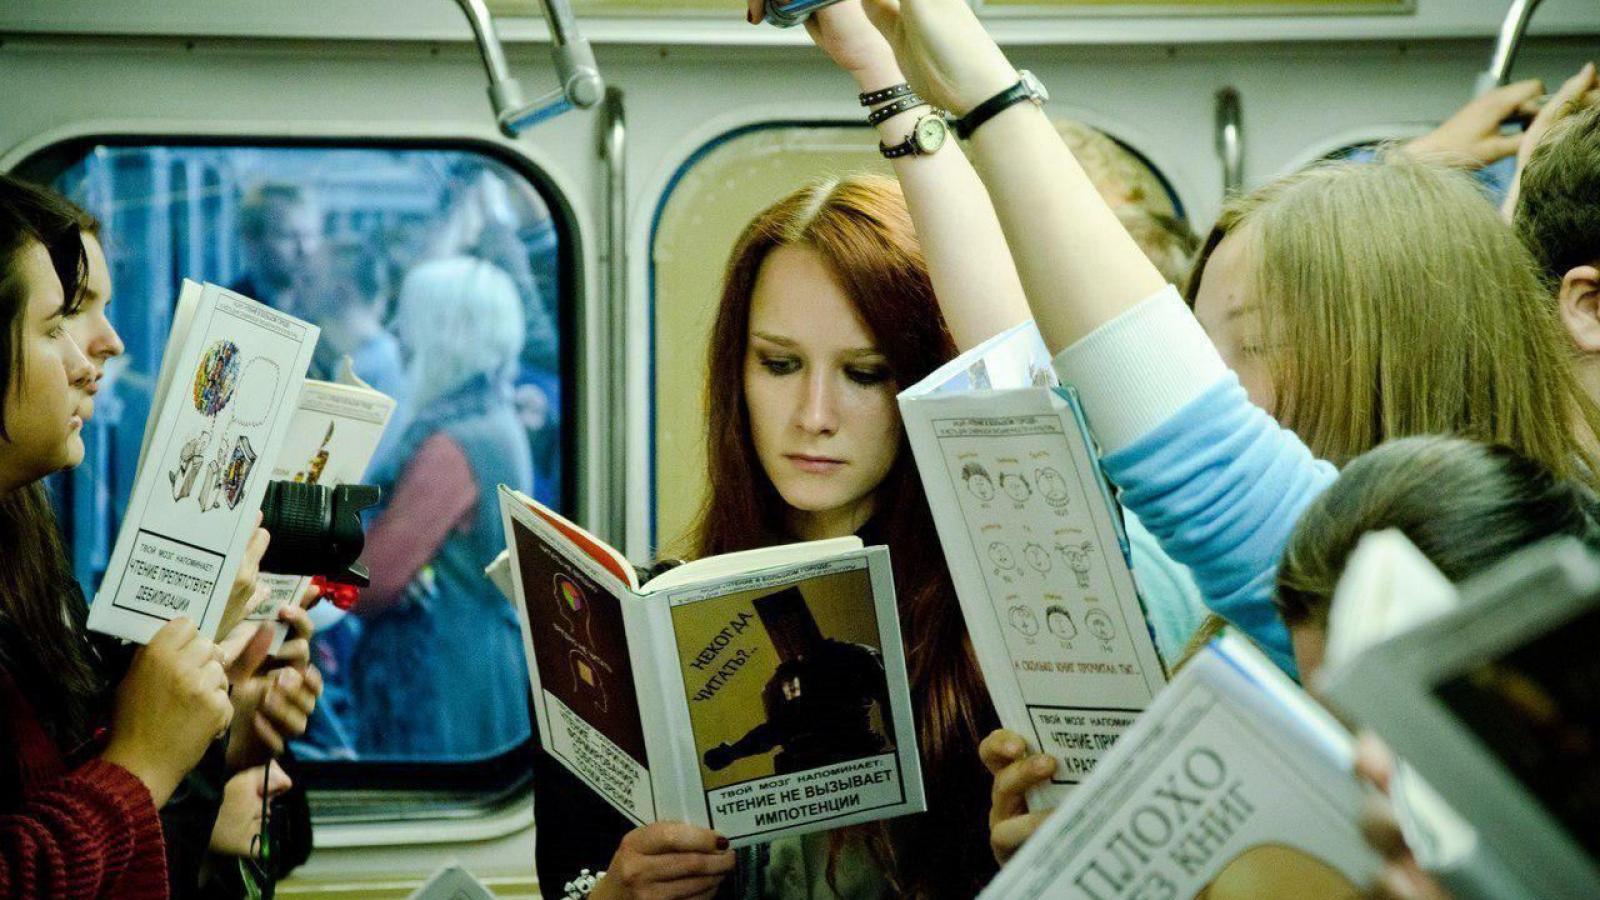 Она читает в метро. Книга для чтения в метро. Люди с книгами в метро. Люди читают в метро. Читает книгу в метро.